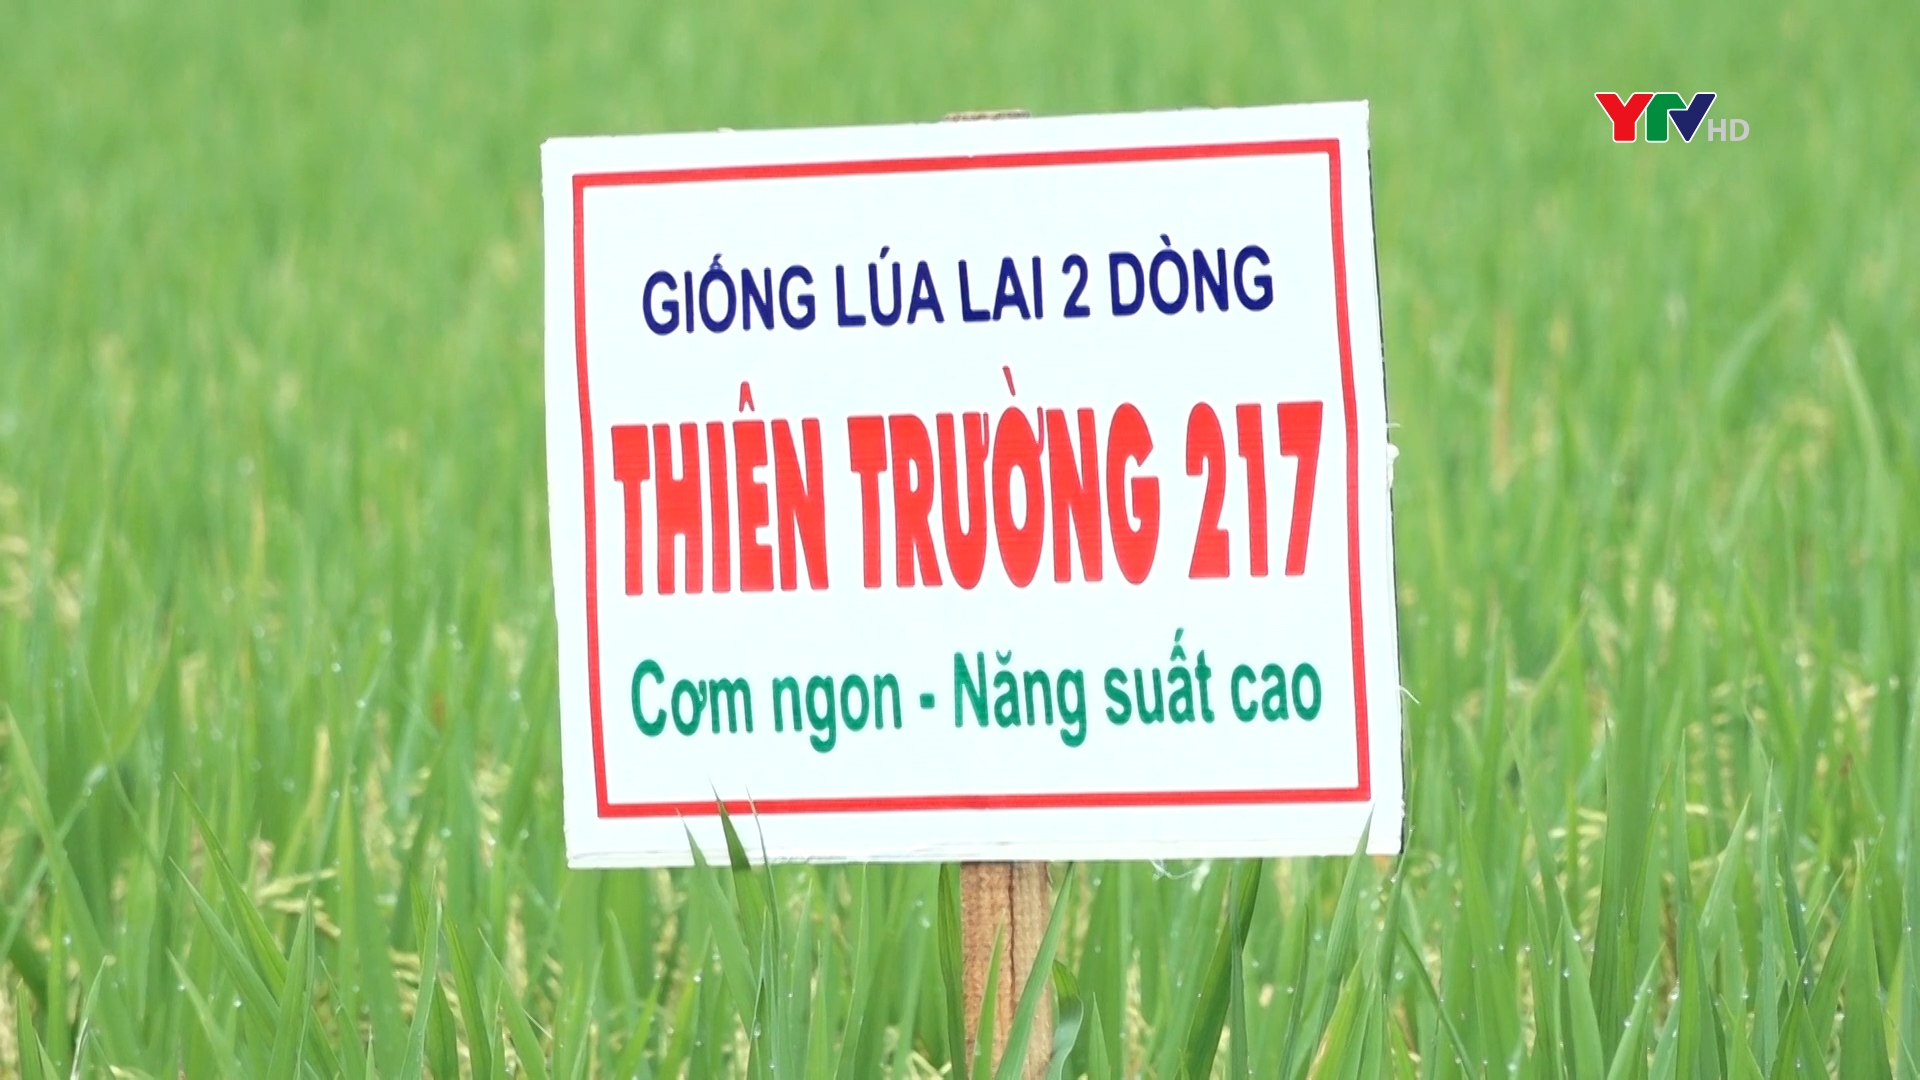 Huyện Lục Yên đánh giá mô hình khảo nghiệm giống lúa lai 2 dòng Thiên Trường 217 tại xã Lâm Thượng